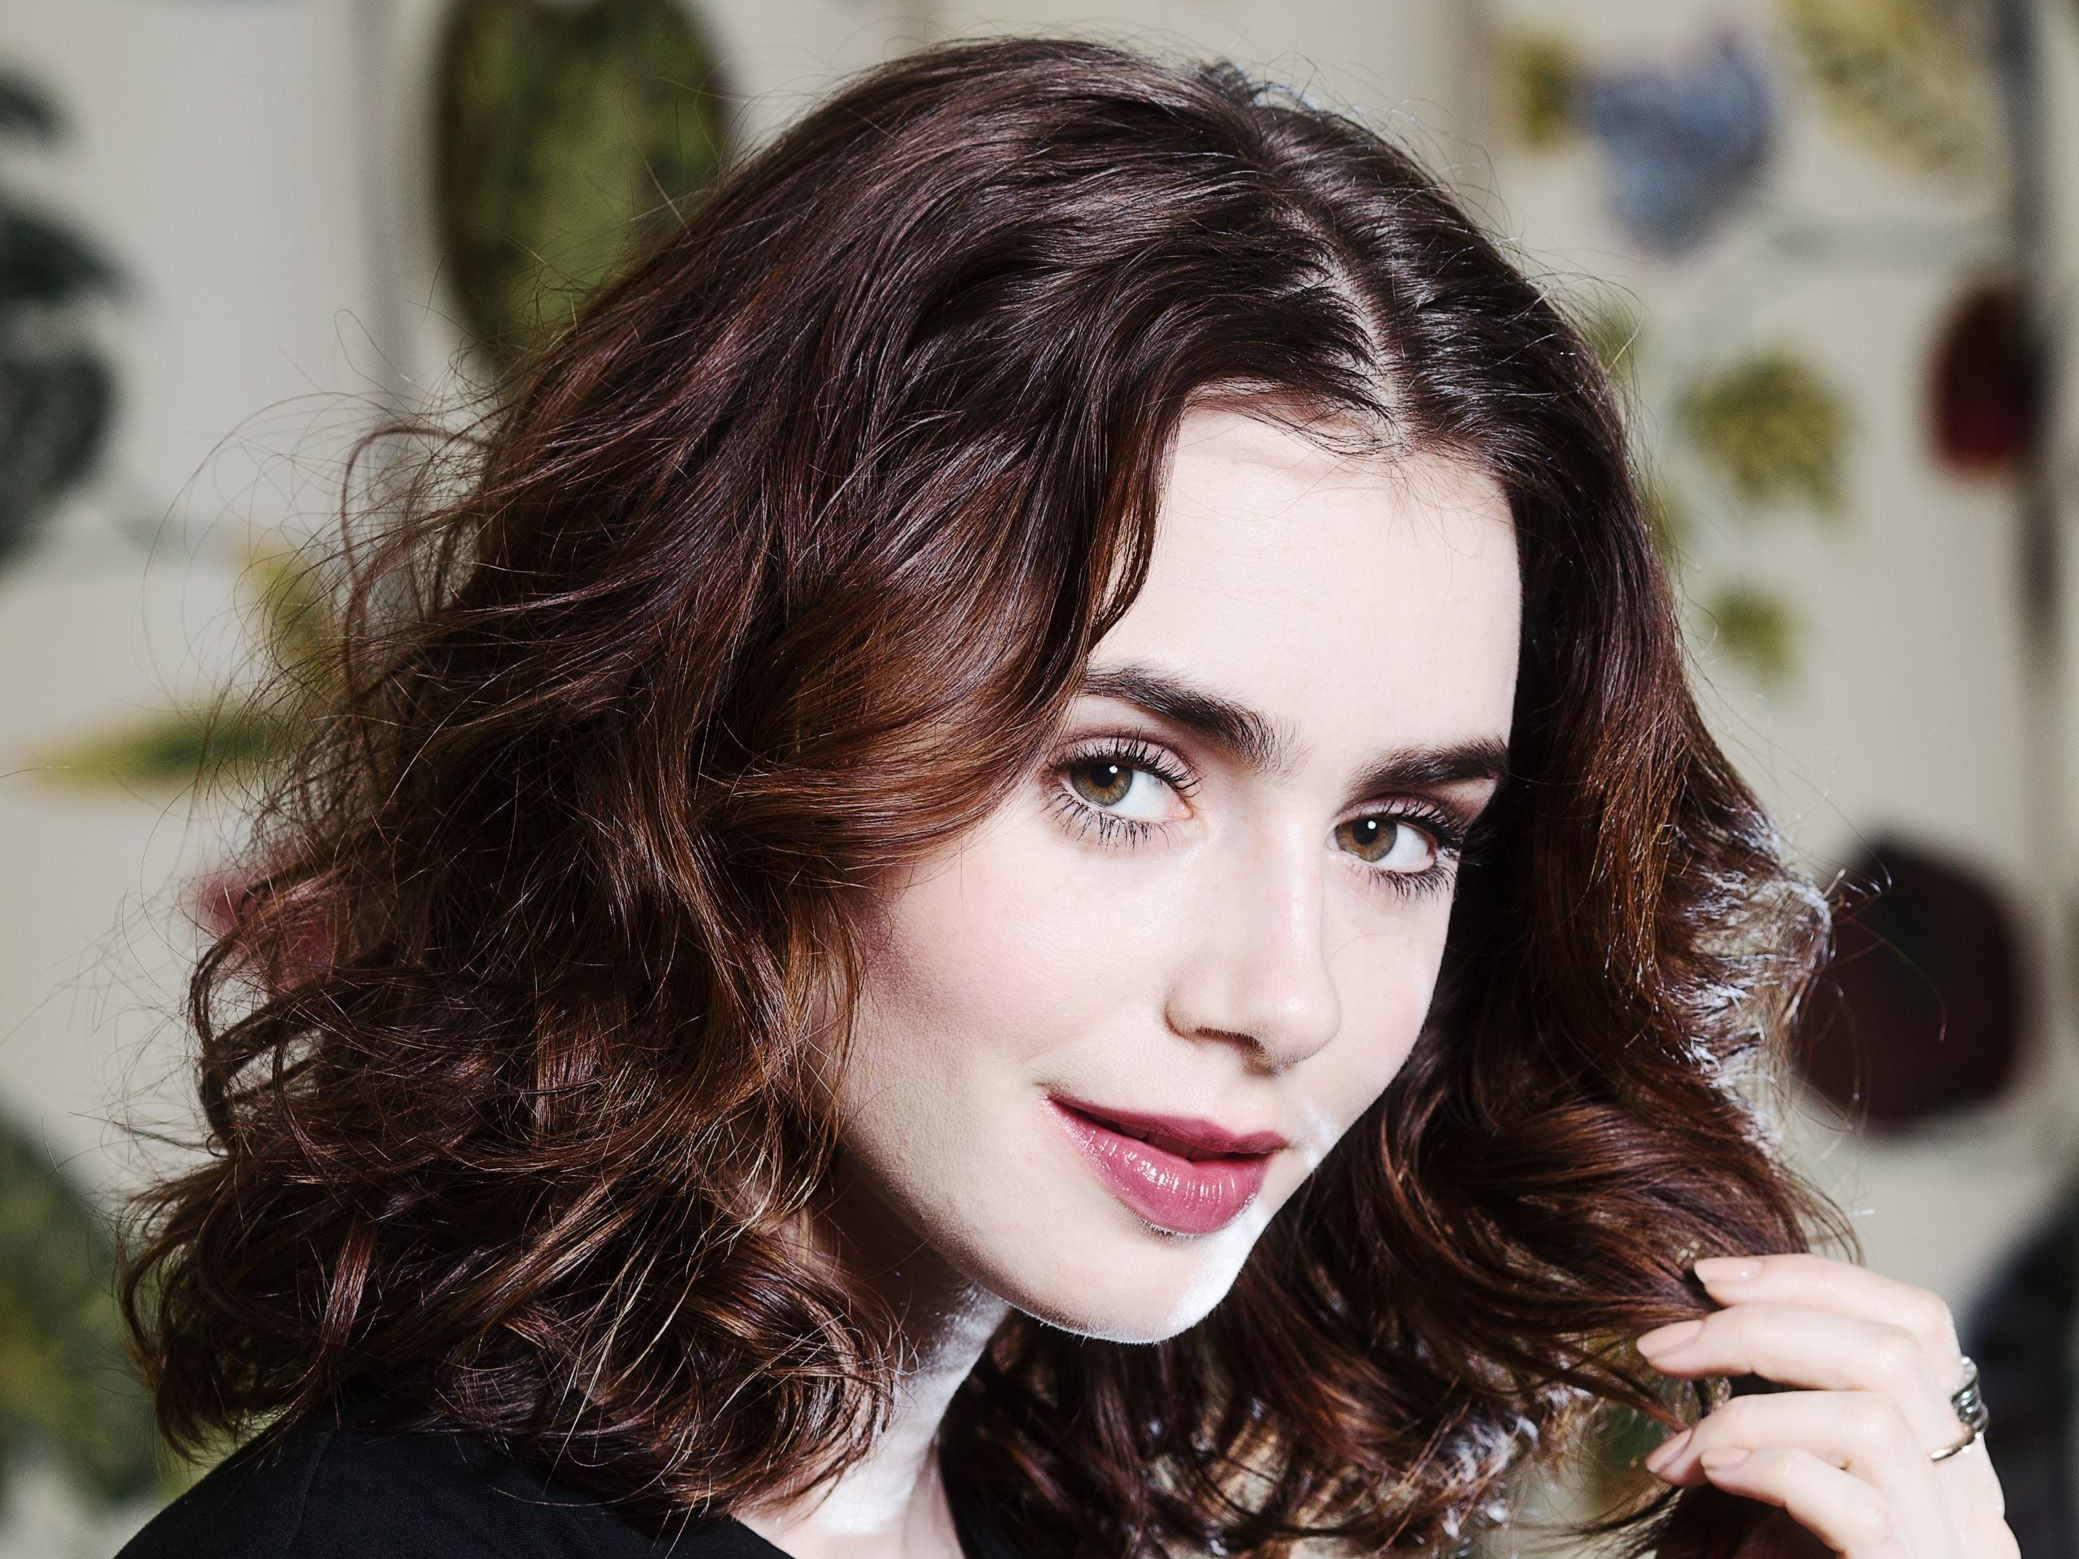 Actress Lipstick Face British Brunette 2079x1559